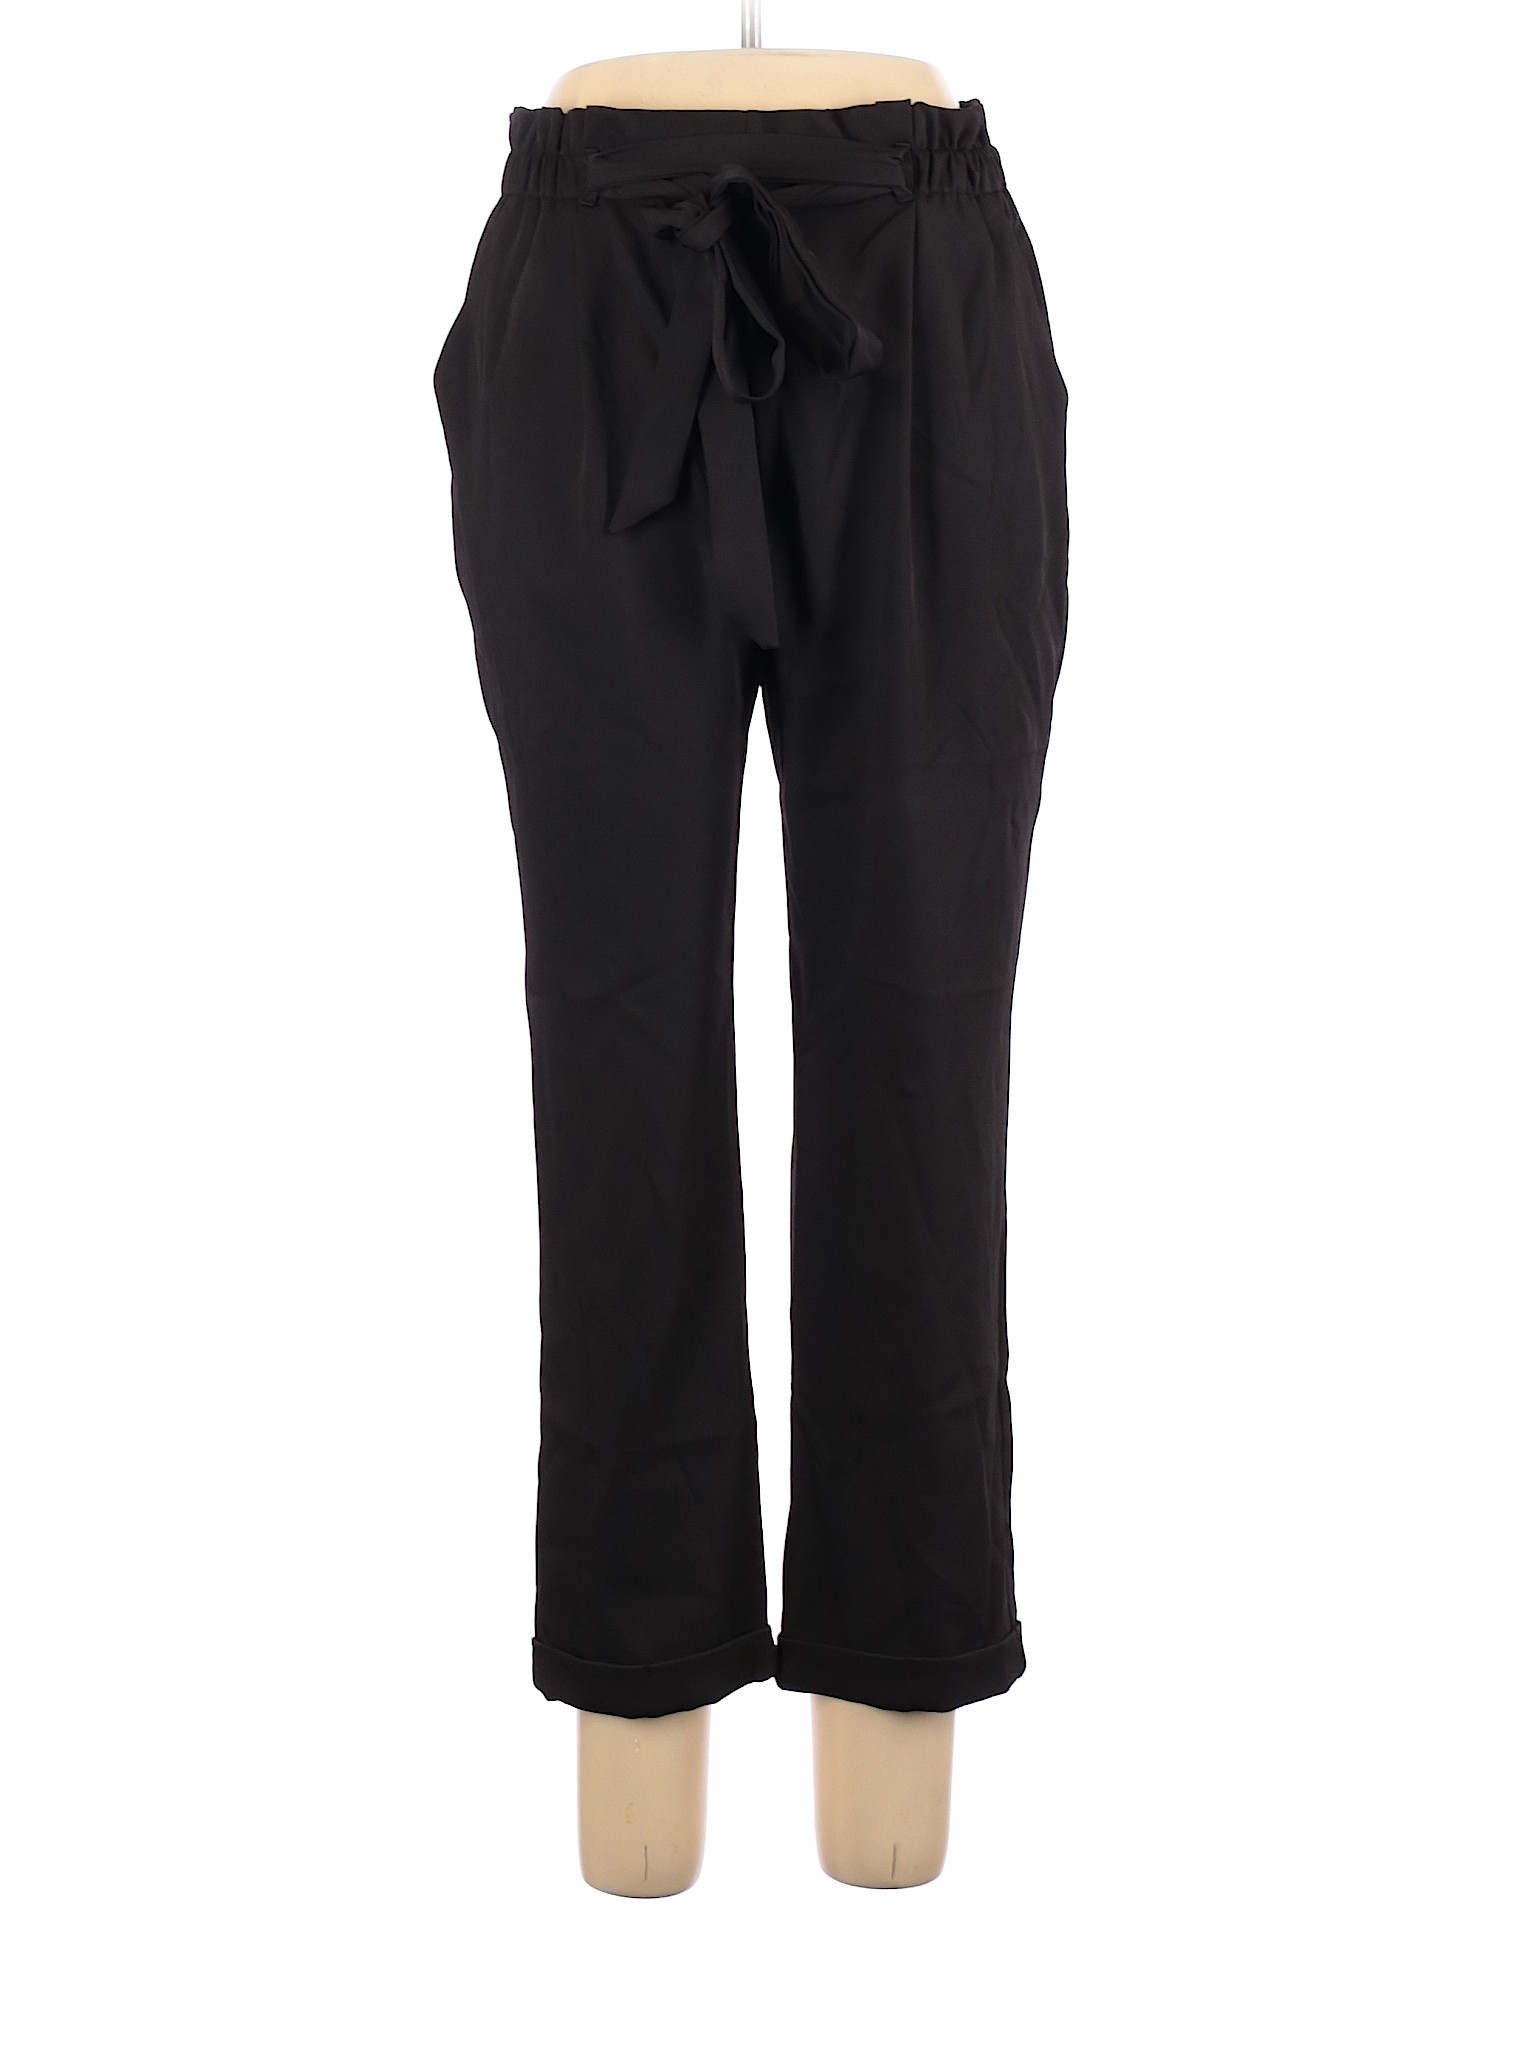 Sienna Sky Women Black Casual Pants L | eBay